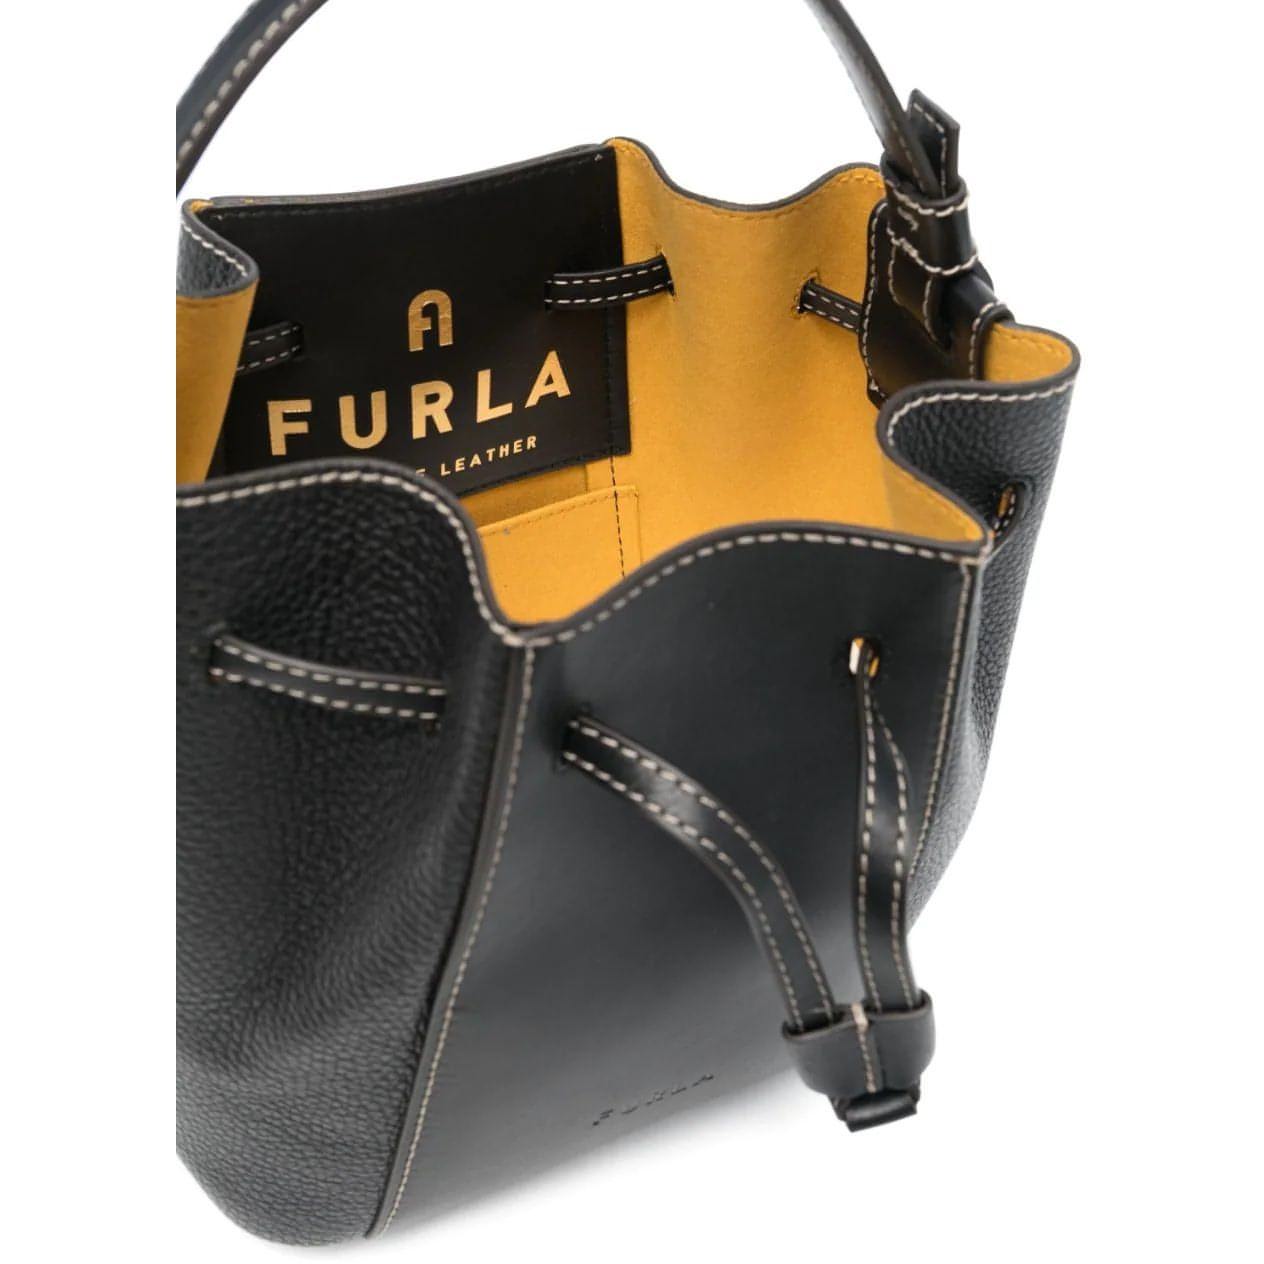 FURLA moteriška juoda rankinė Furla miastella bucket bag